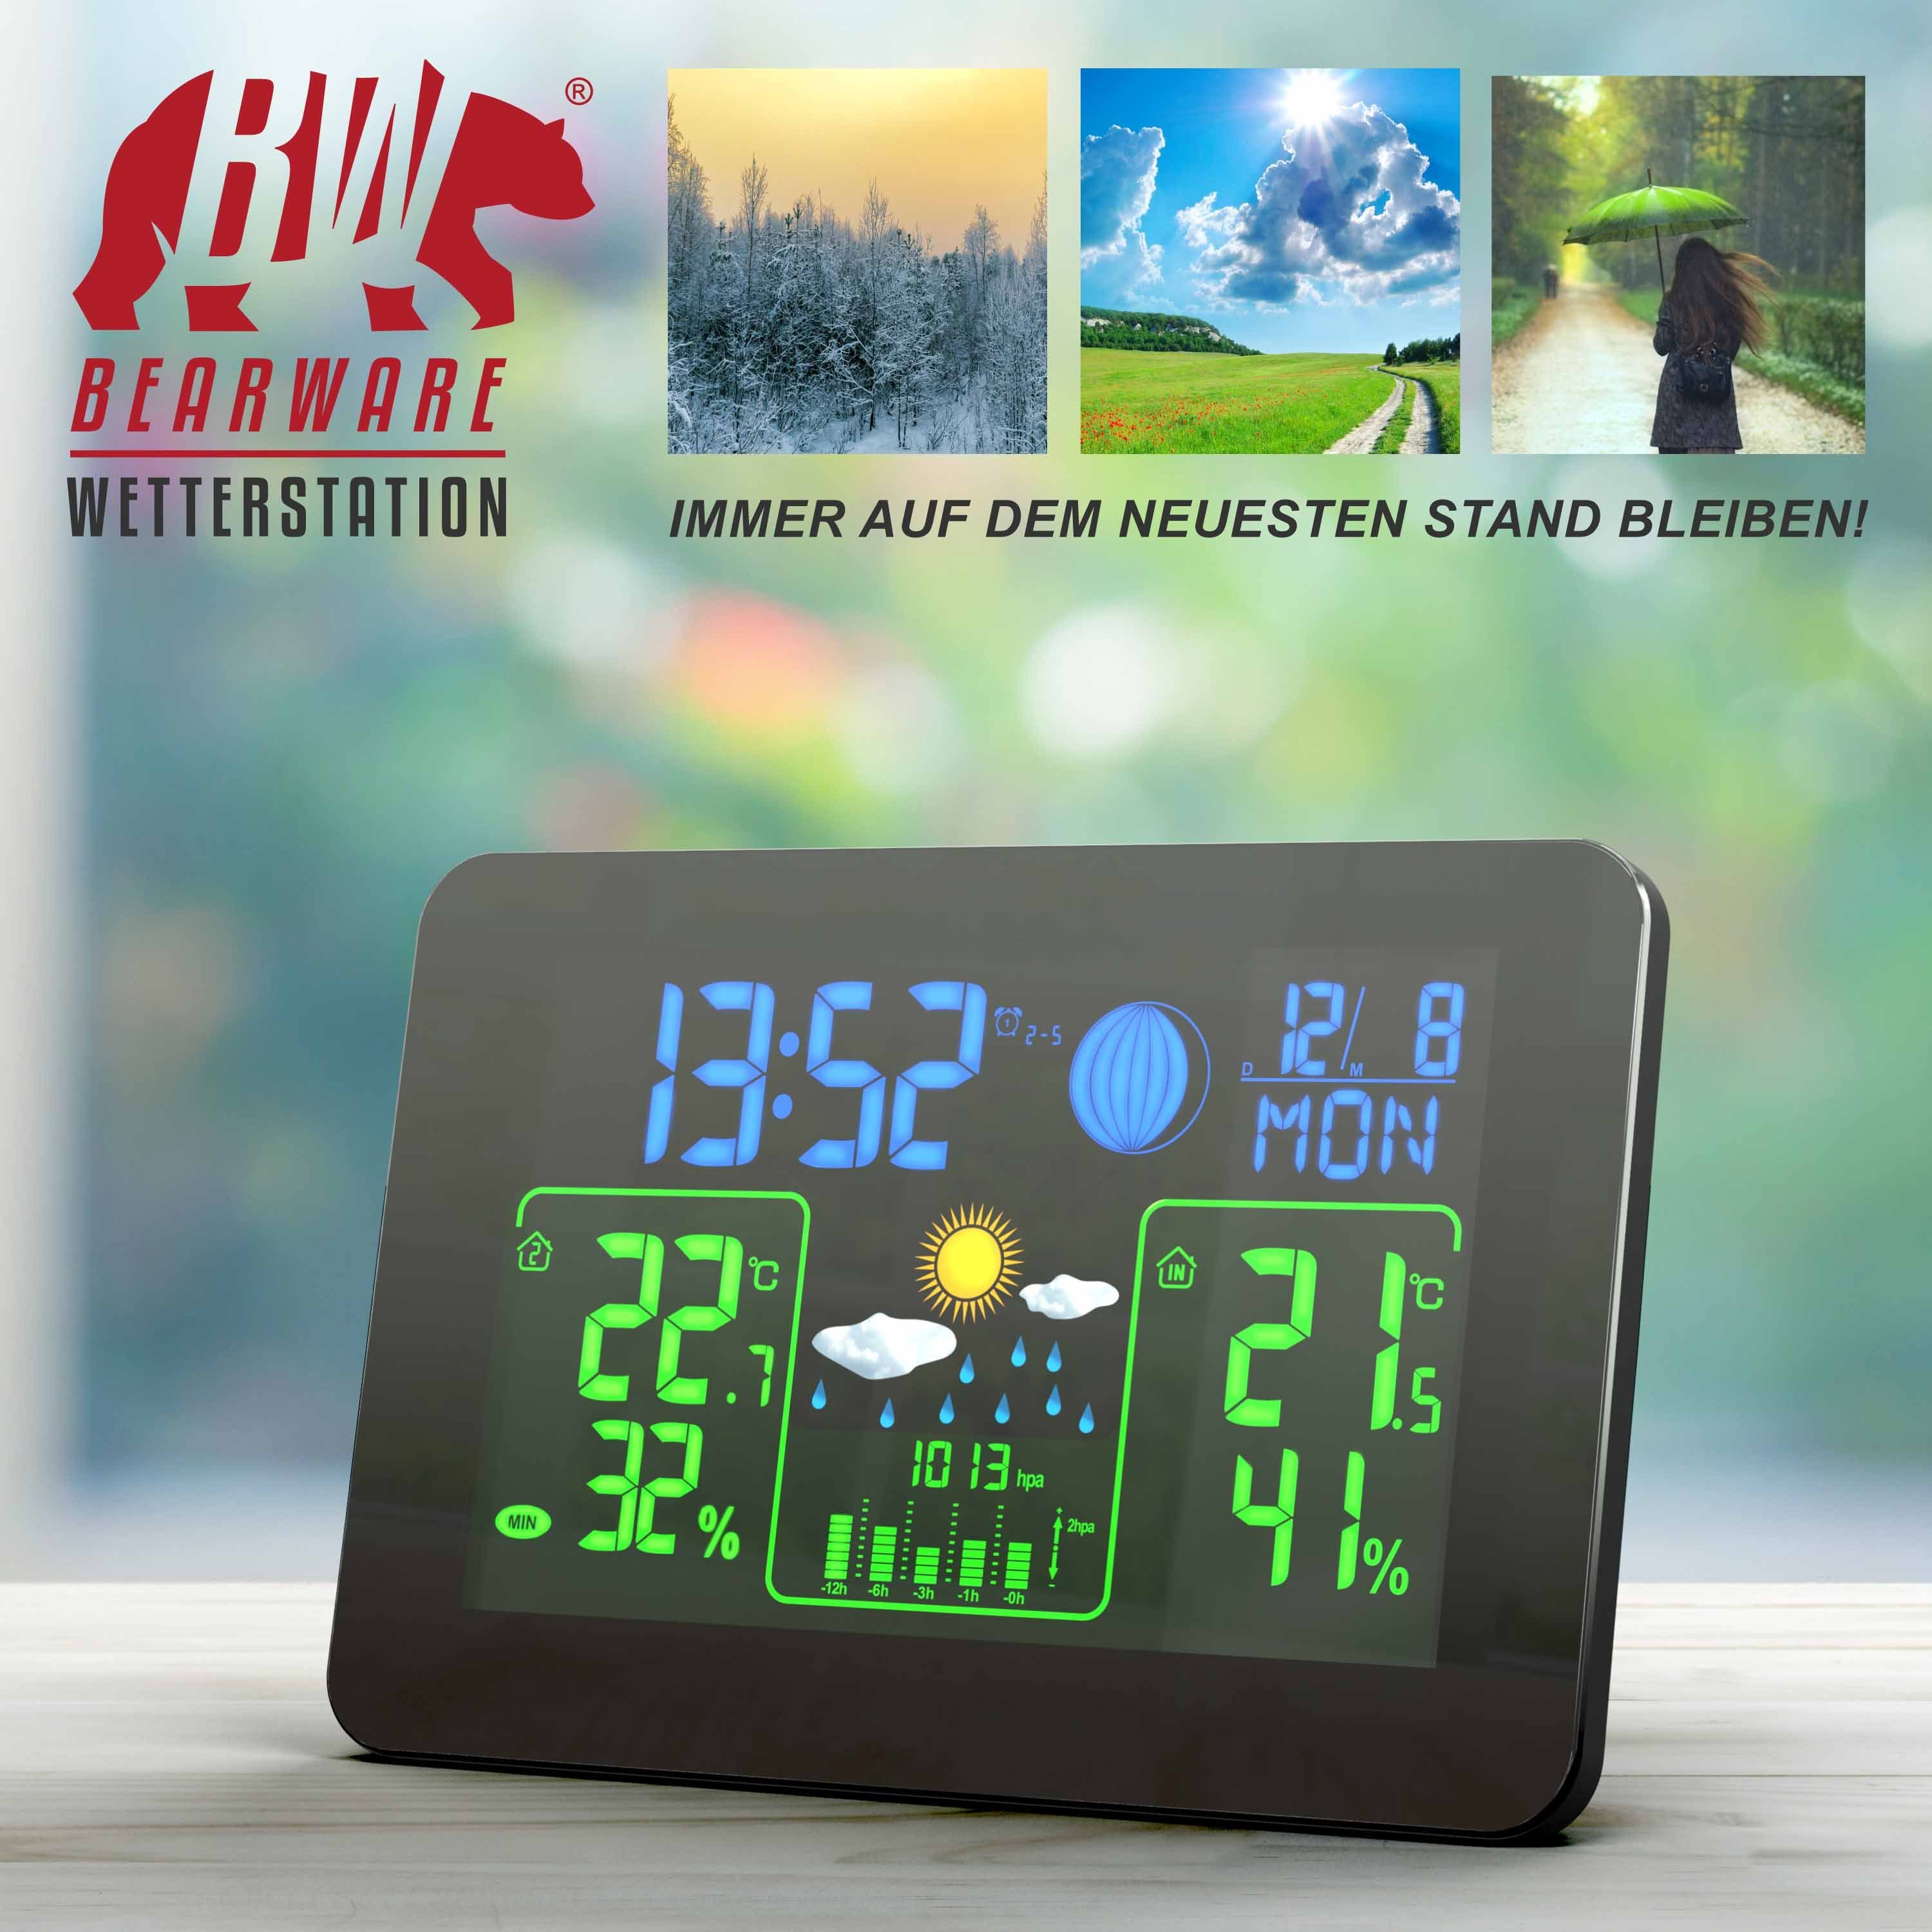 BEARWARE Wetterstation (mit Außensensor, Funk Farb Barometer, mit & uvm) Display Wettervorhersage Außensensor